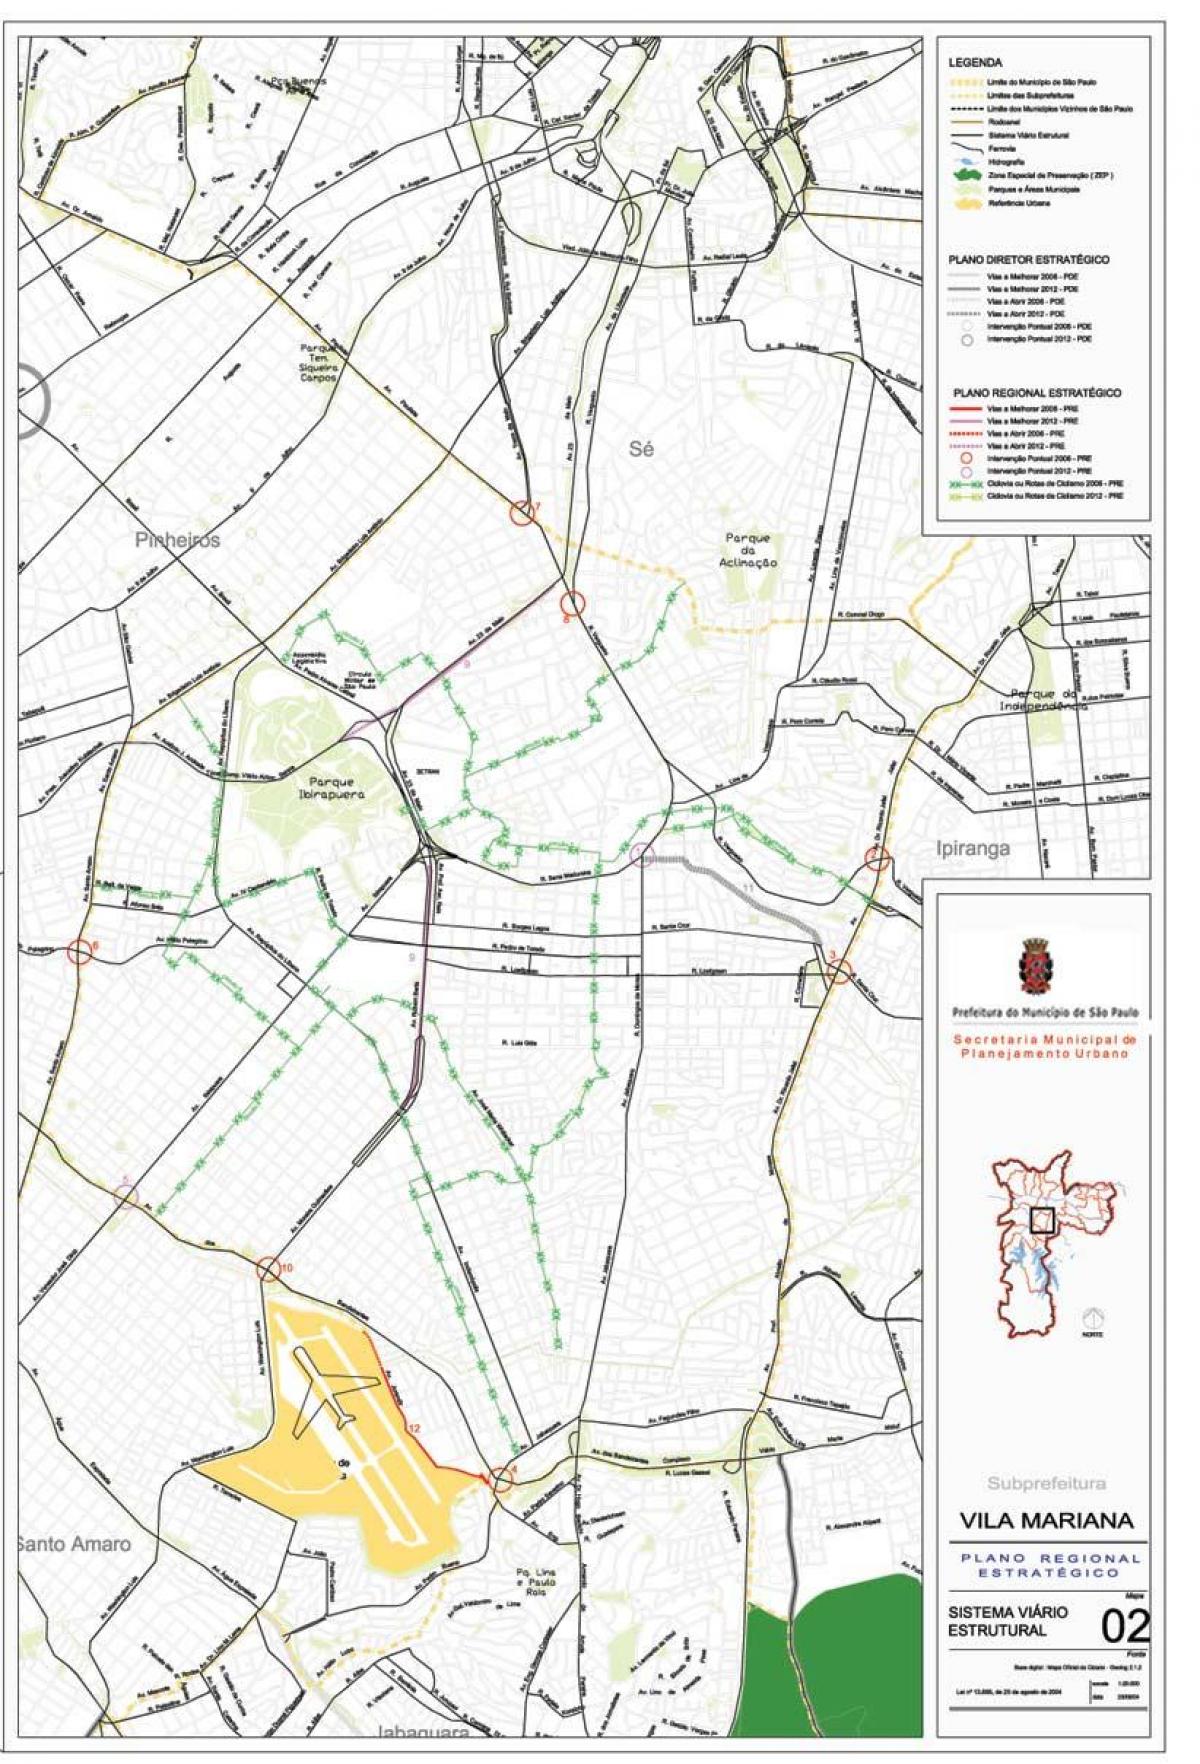 Քարտեզ Վիլա-Մարիանա Սան - ճանապարհների